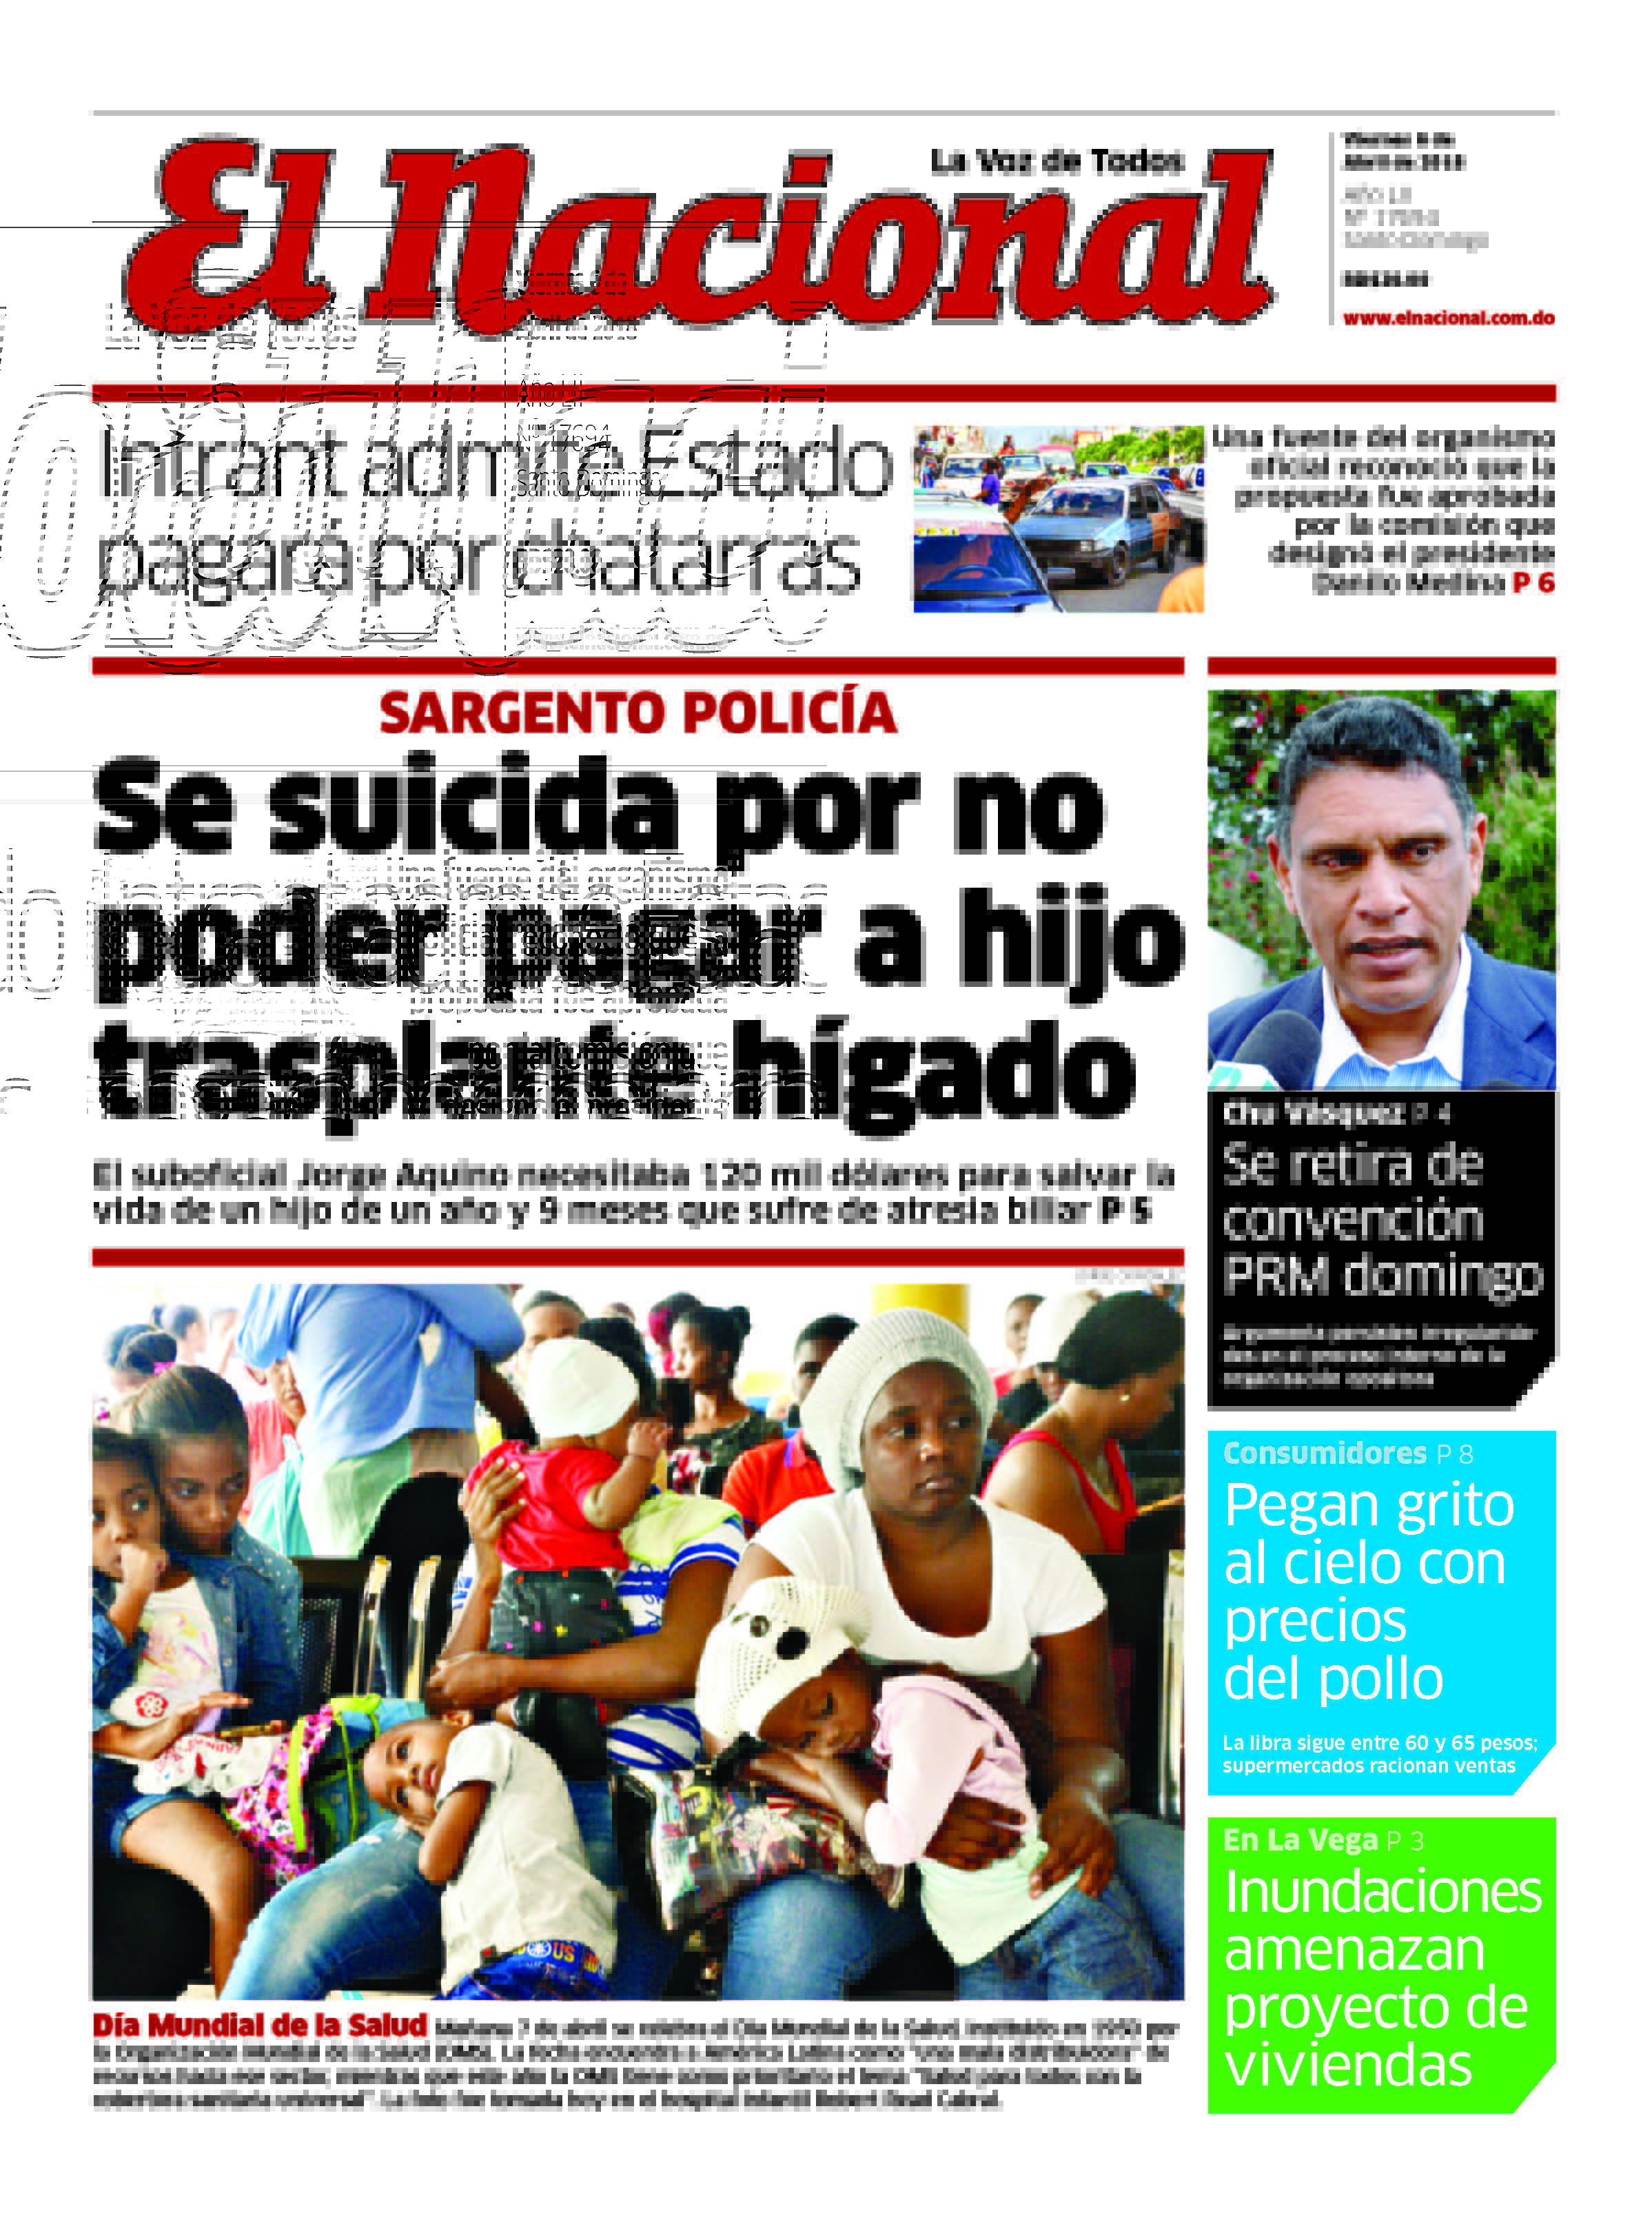 Portada Periódico El Nacional, Viernes 06 de Abril 2018